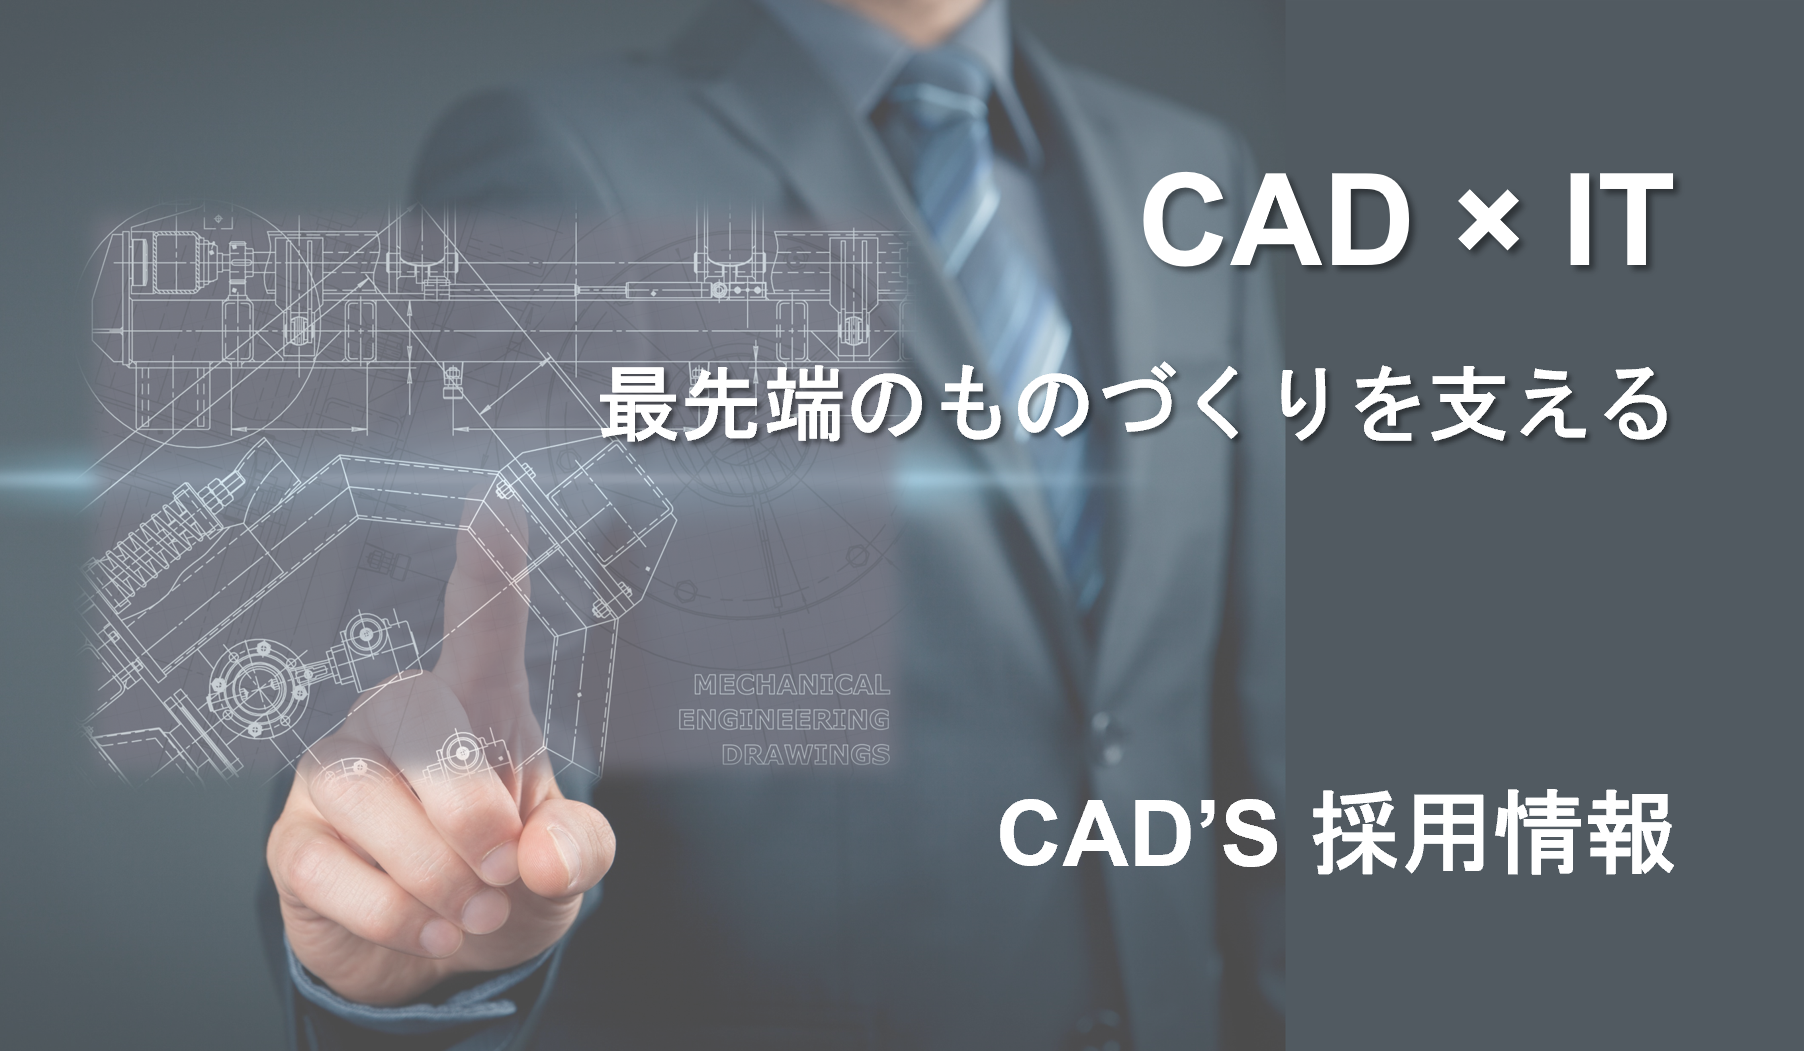 イメージ：CAD'S 採用情報